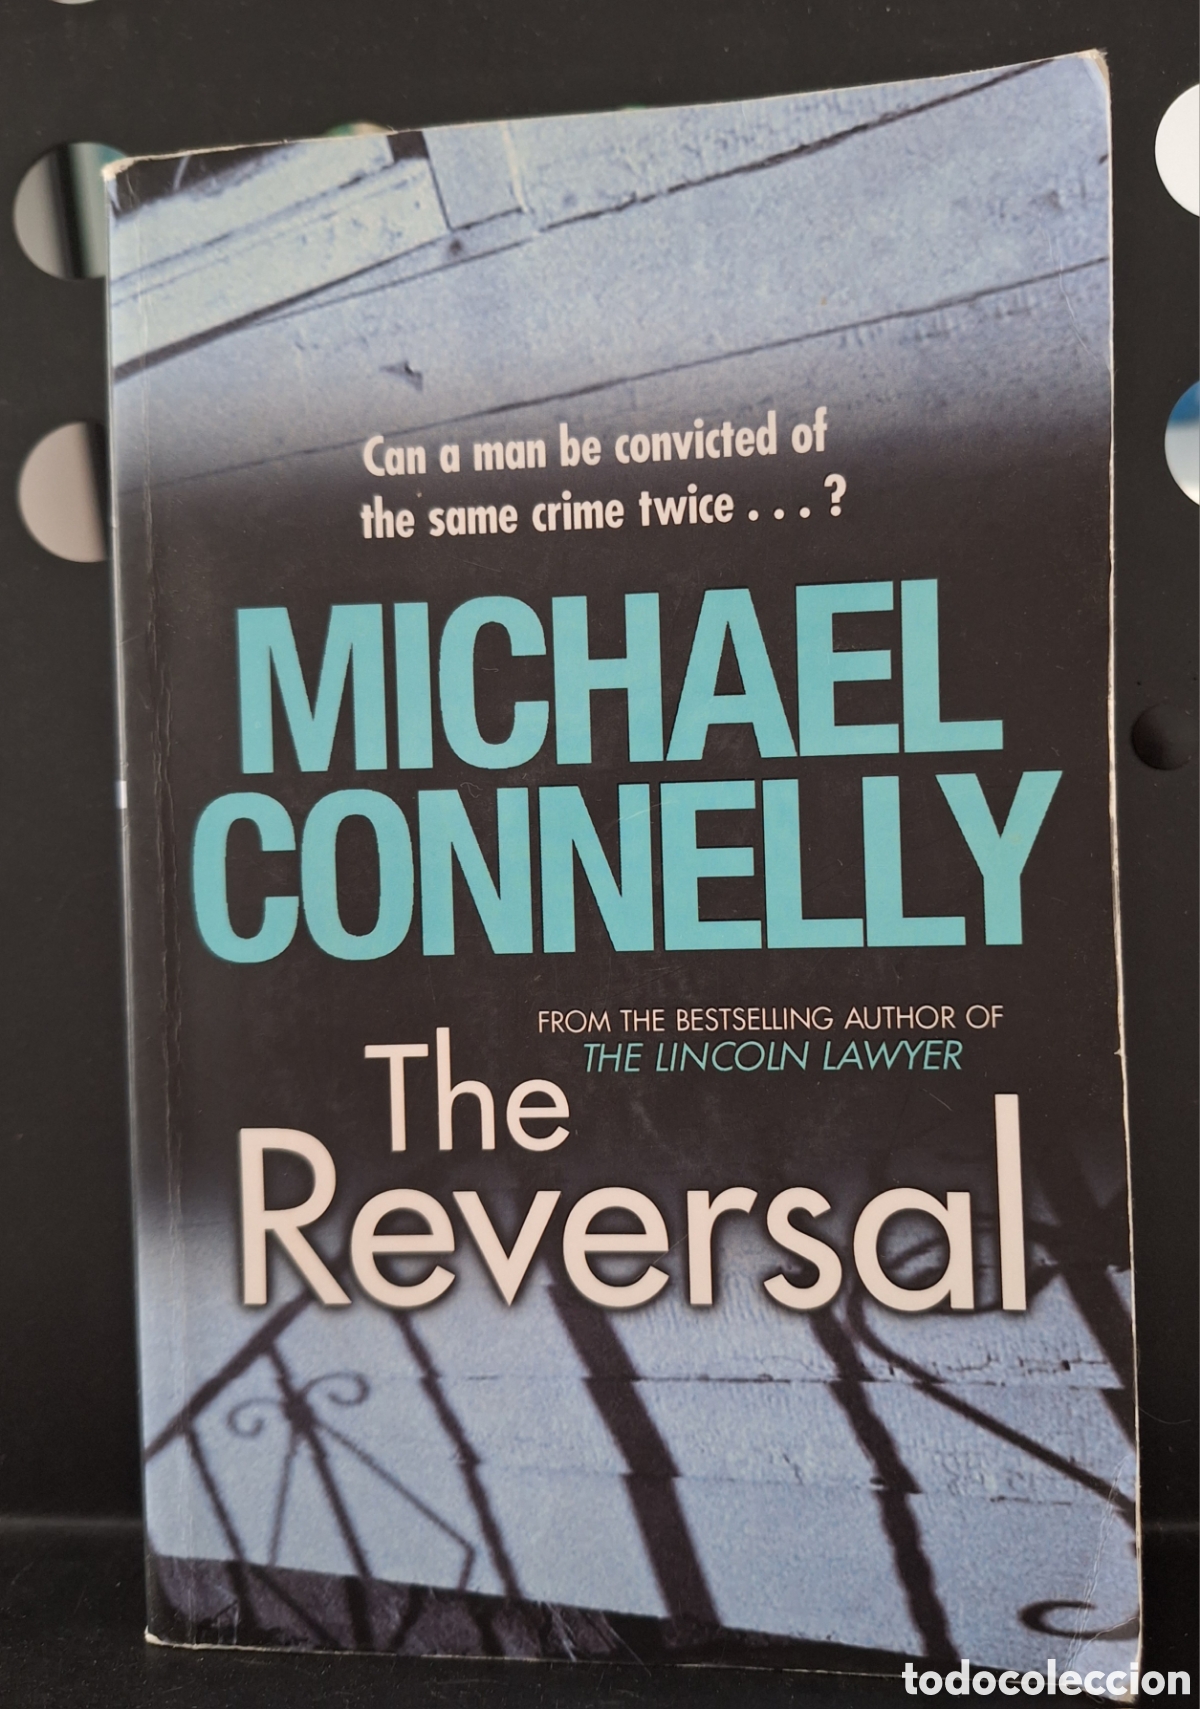 the reversal, michael connelly - Acquista Altri libri usati in diverse  lingue su todocoleccion